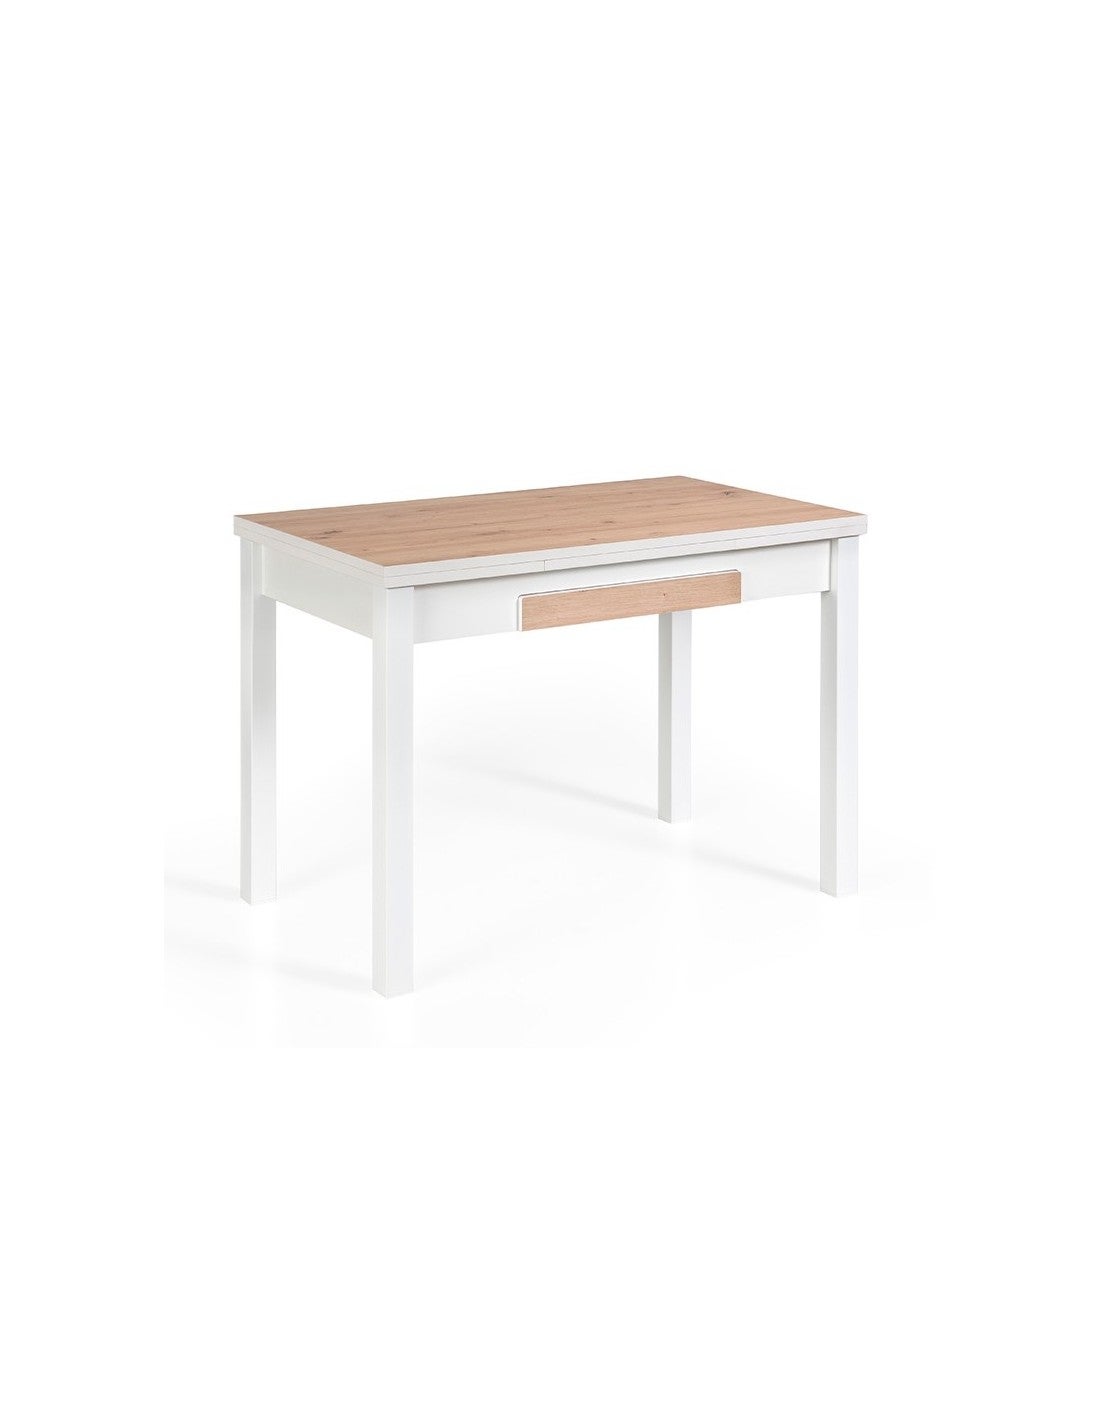 Mesa de cocina Alba en blanco, aluminio y cajón blanco br 100x60 cm